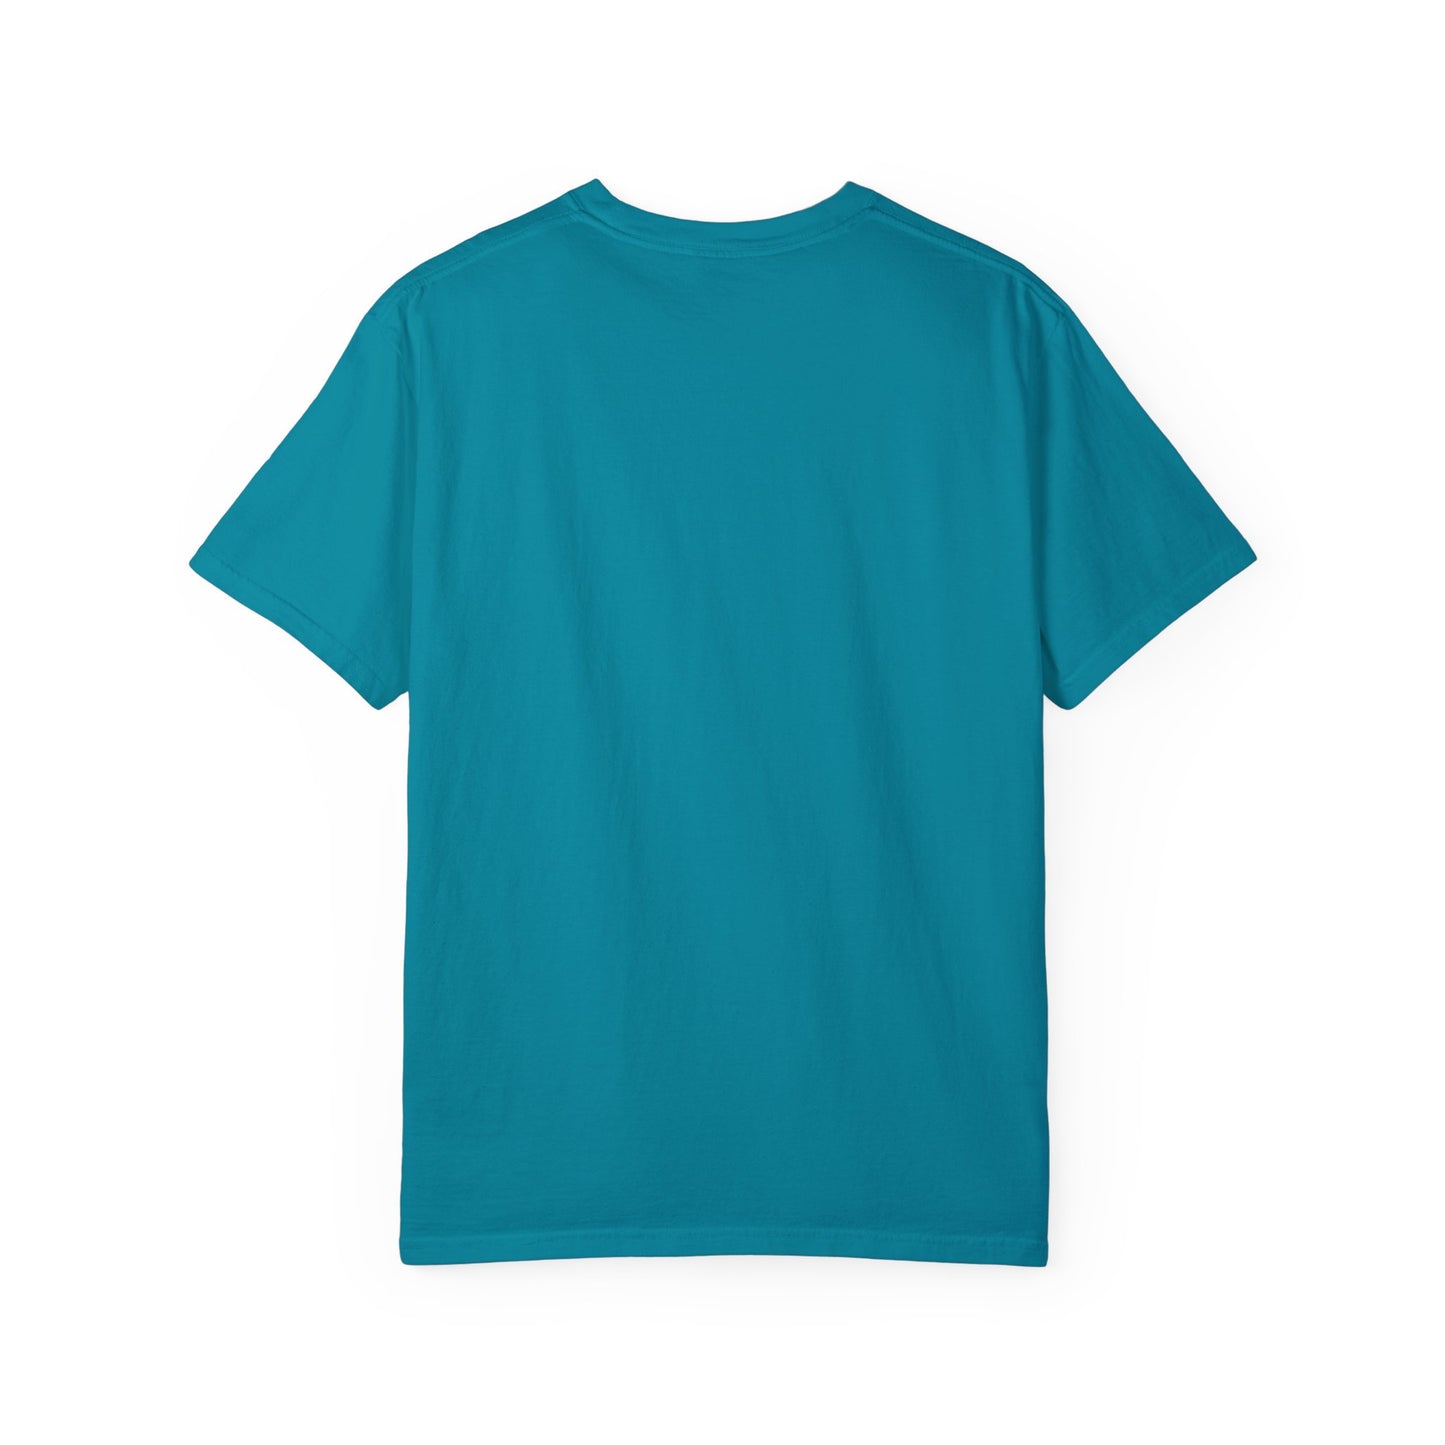 Lima, Ohio Turquoise T-Shirt